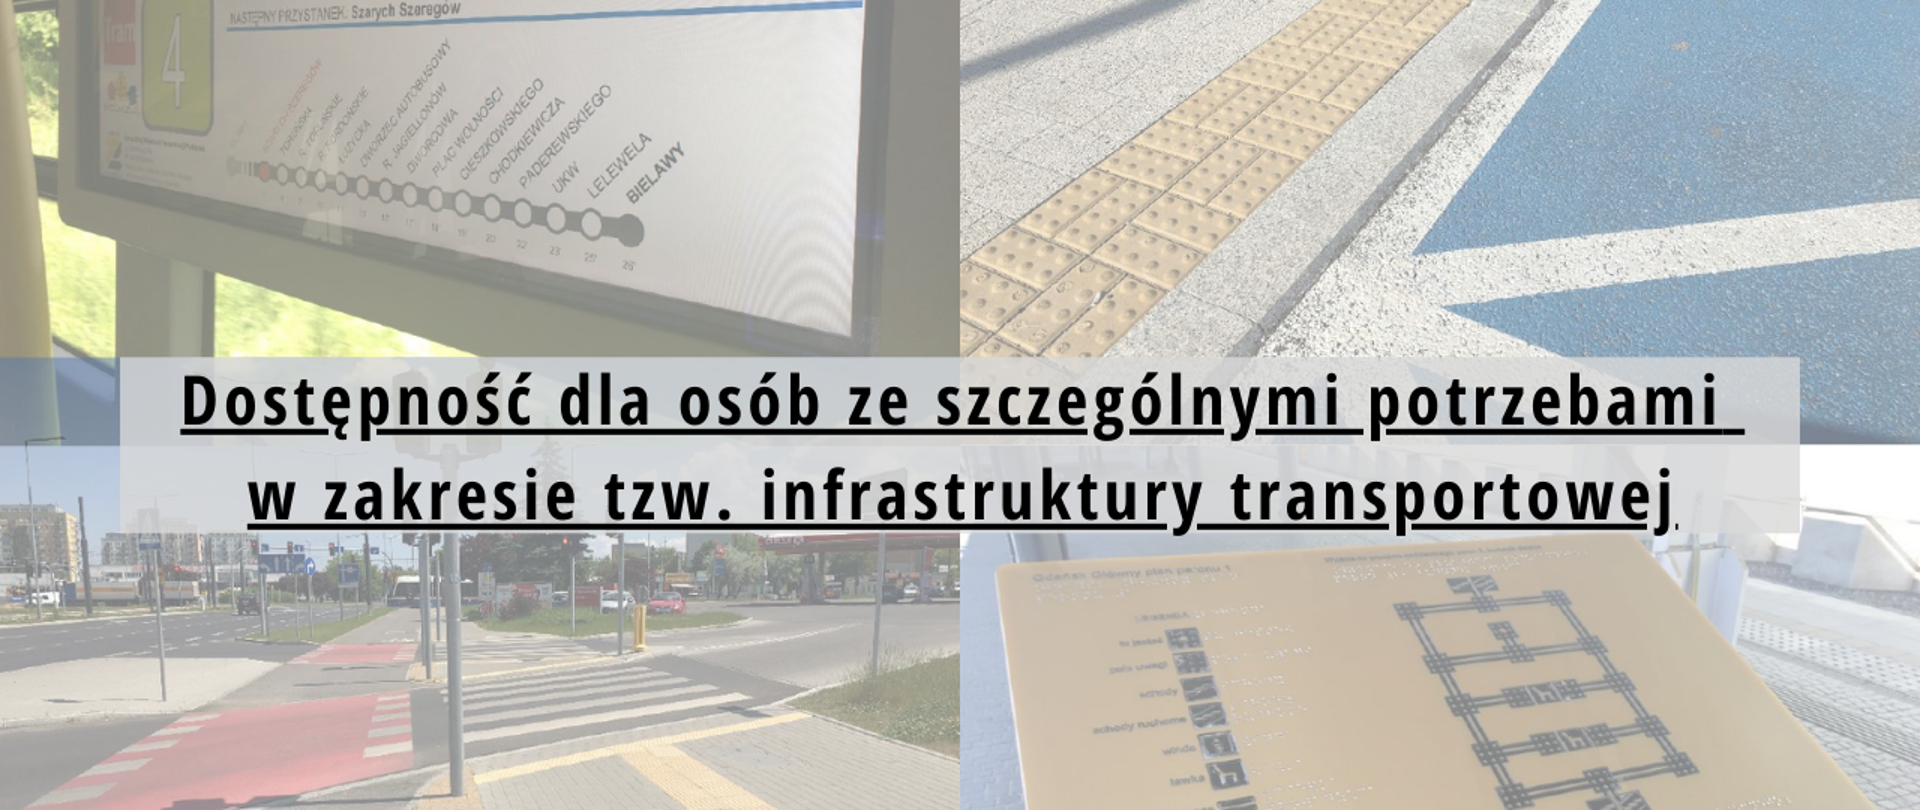 Dostępność dla osób ze szczególnymi potrzebami w zakresie tzw. infrastruktury transportowej, w tle zdjęcie rozkładu jazdy tramwaju, niskiego krawężnika, przejścia dla pieszych oraz planu dworca z legendą dla osób niewidomych 